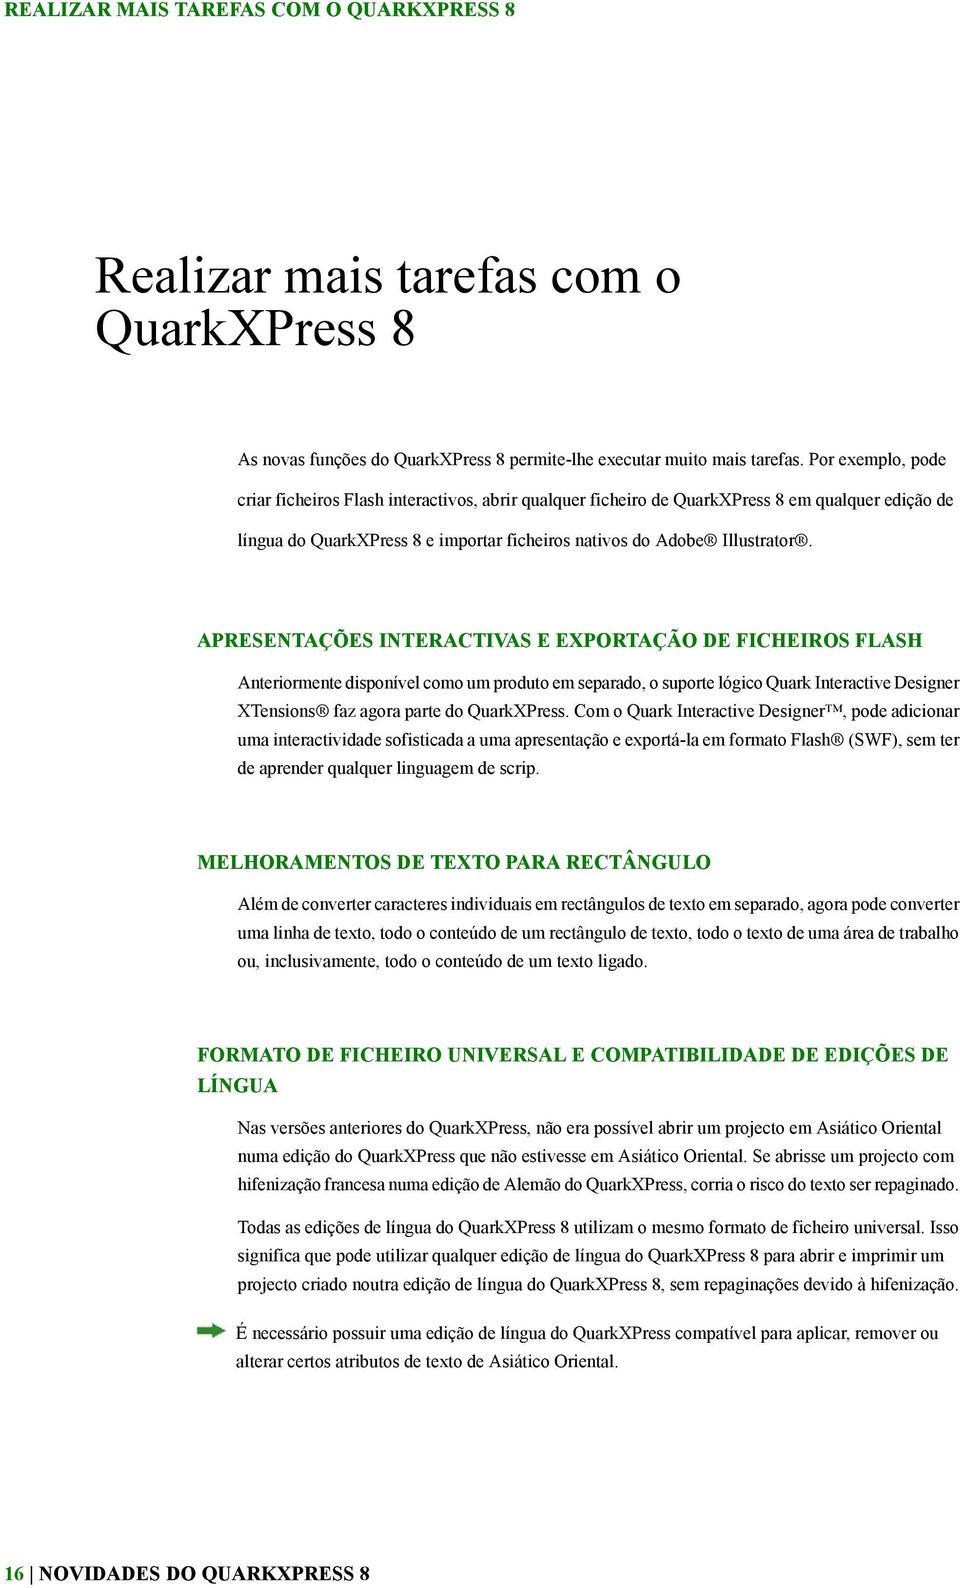 APRESENTAÇÕES INTERACTIVAS E EXPORTAÇÃO DE FICHEIROS FLASH Anteriormente disponível como um produto em separado, o suporte lógico Quark Interactive Designer XTensions faz agora parte do QuarkXPress.